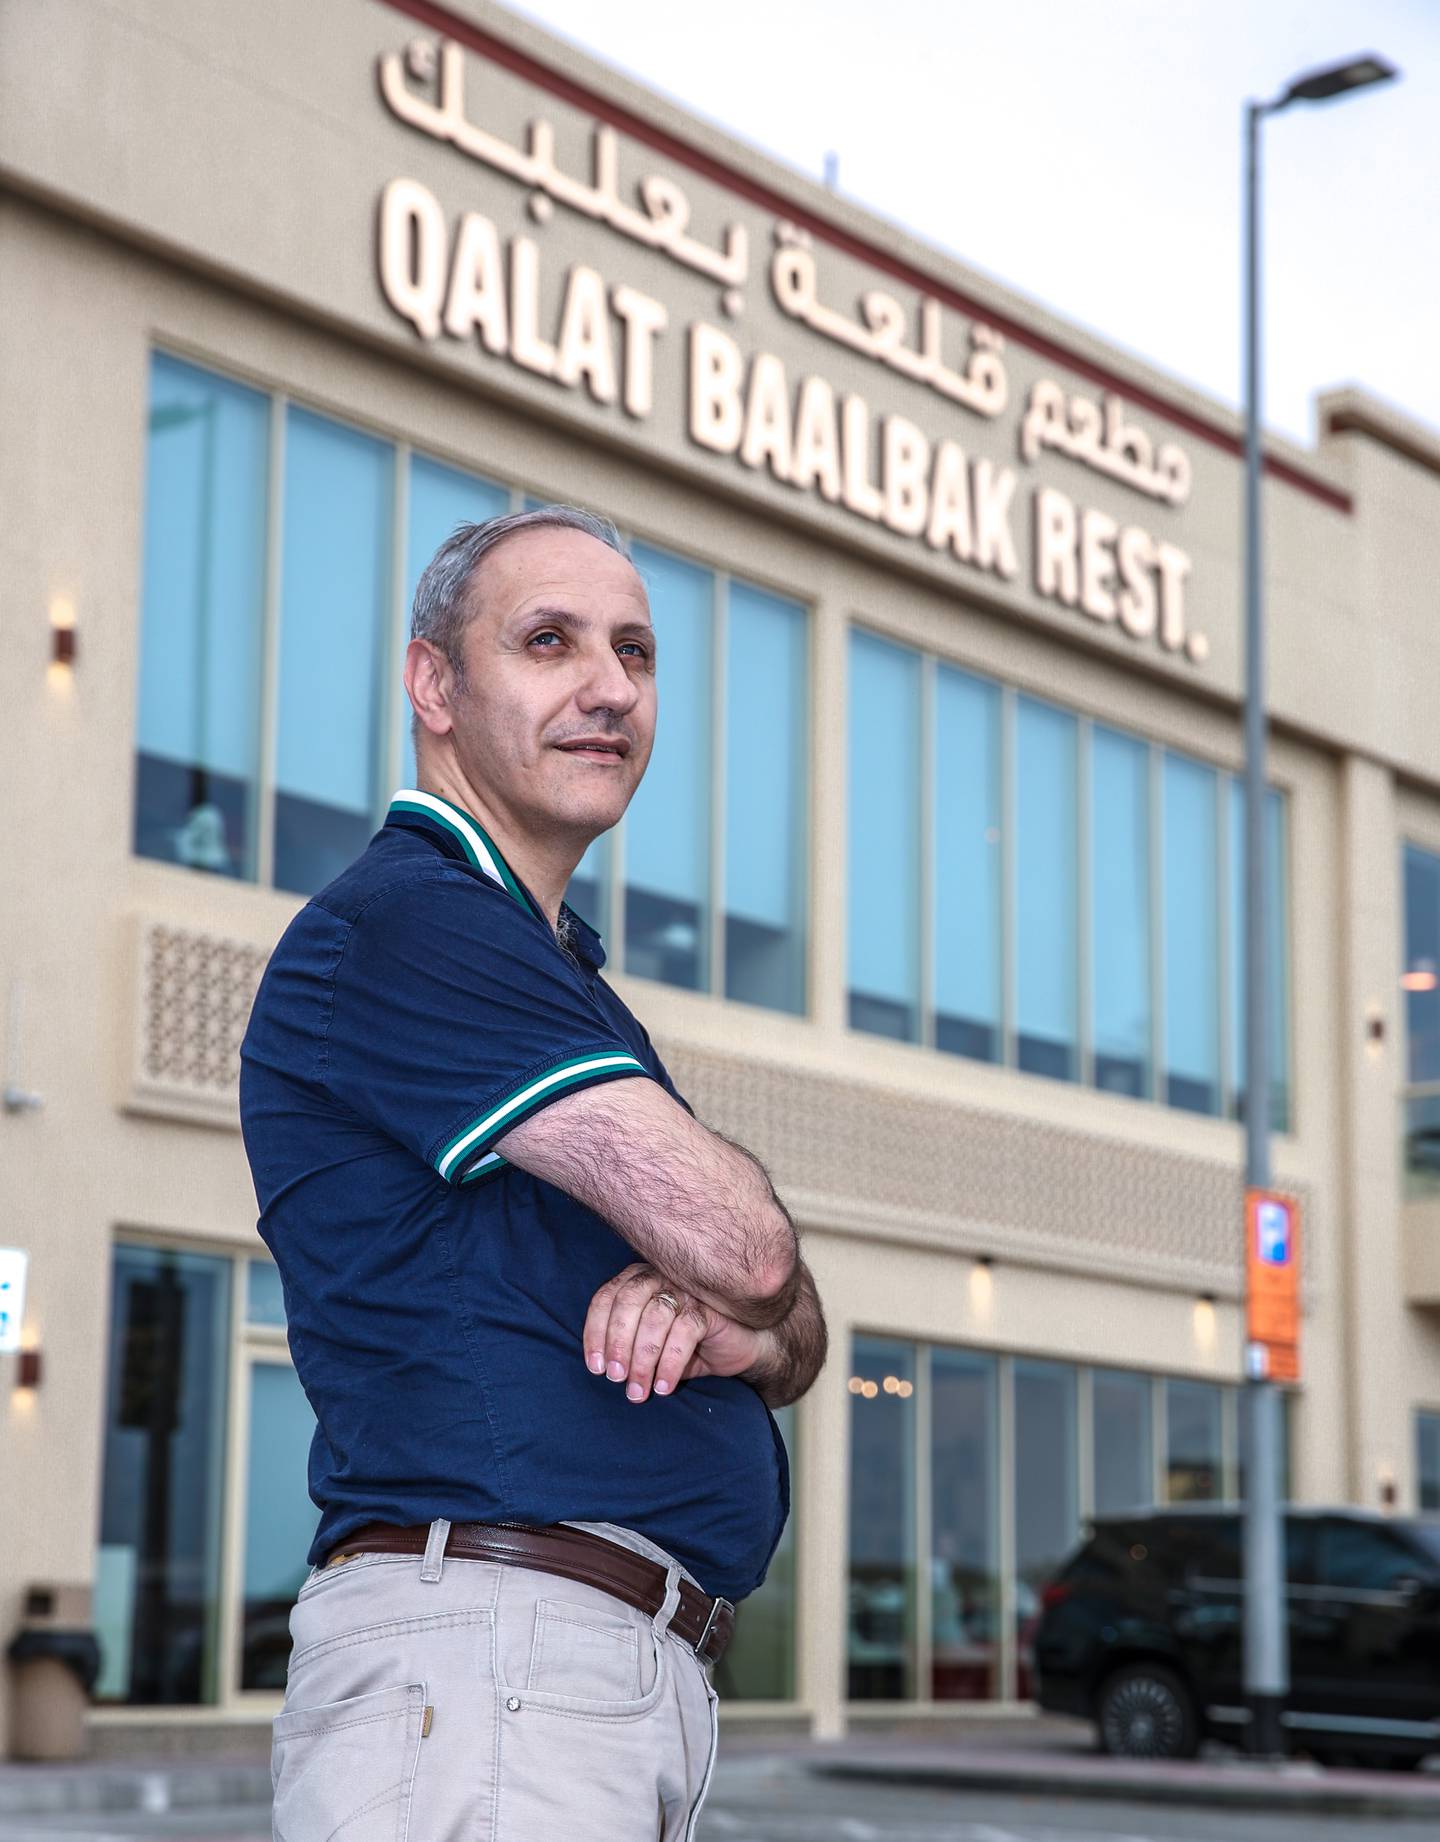 Charbel Khalil, operating manager at Qalat Baalbak. Victor Besa / The National